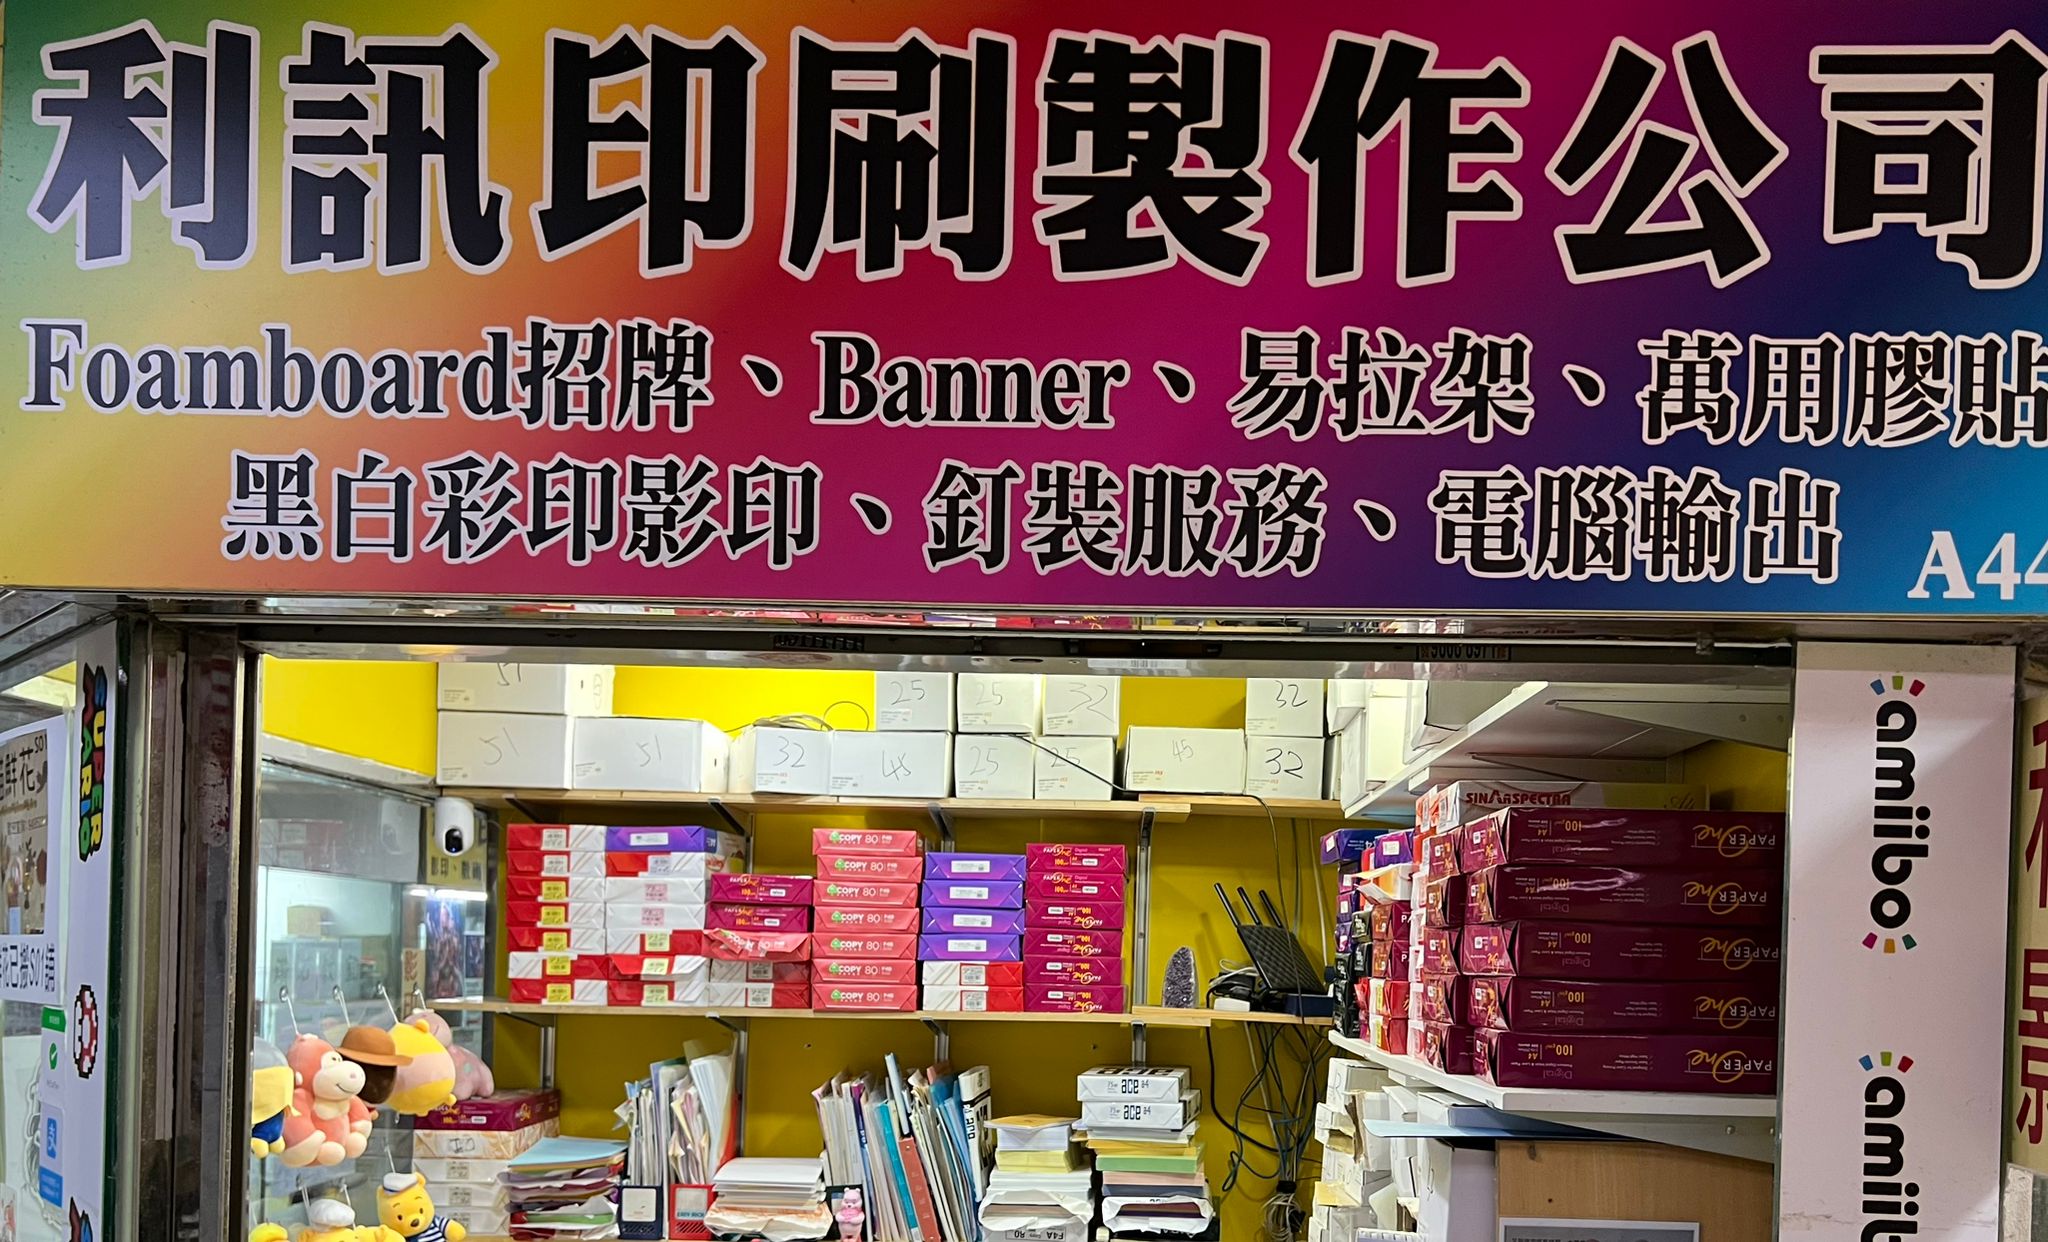 「香港影印店資訊網」 利訊印刷製作公司